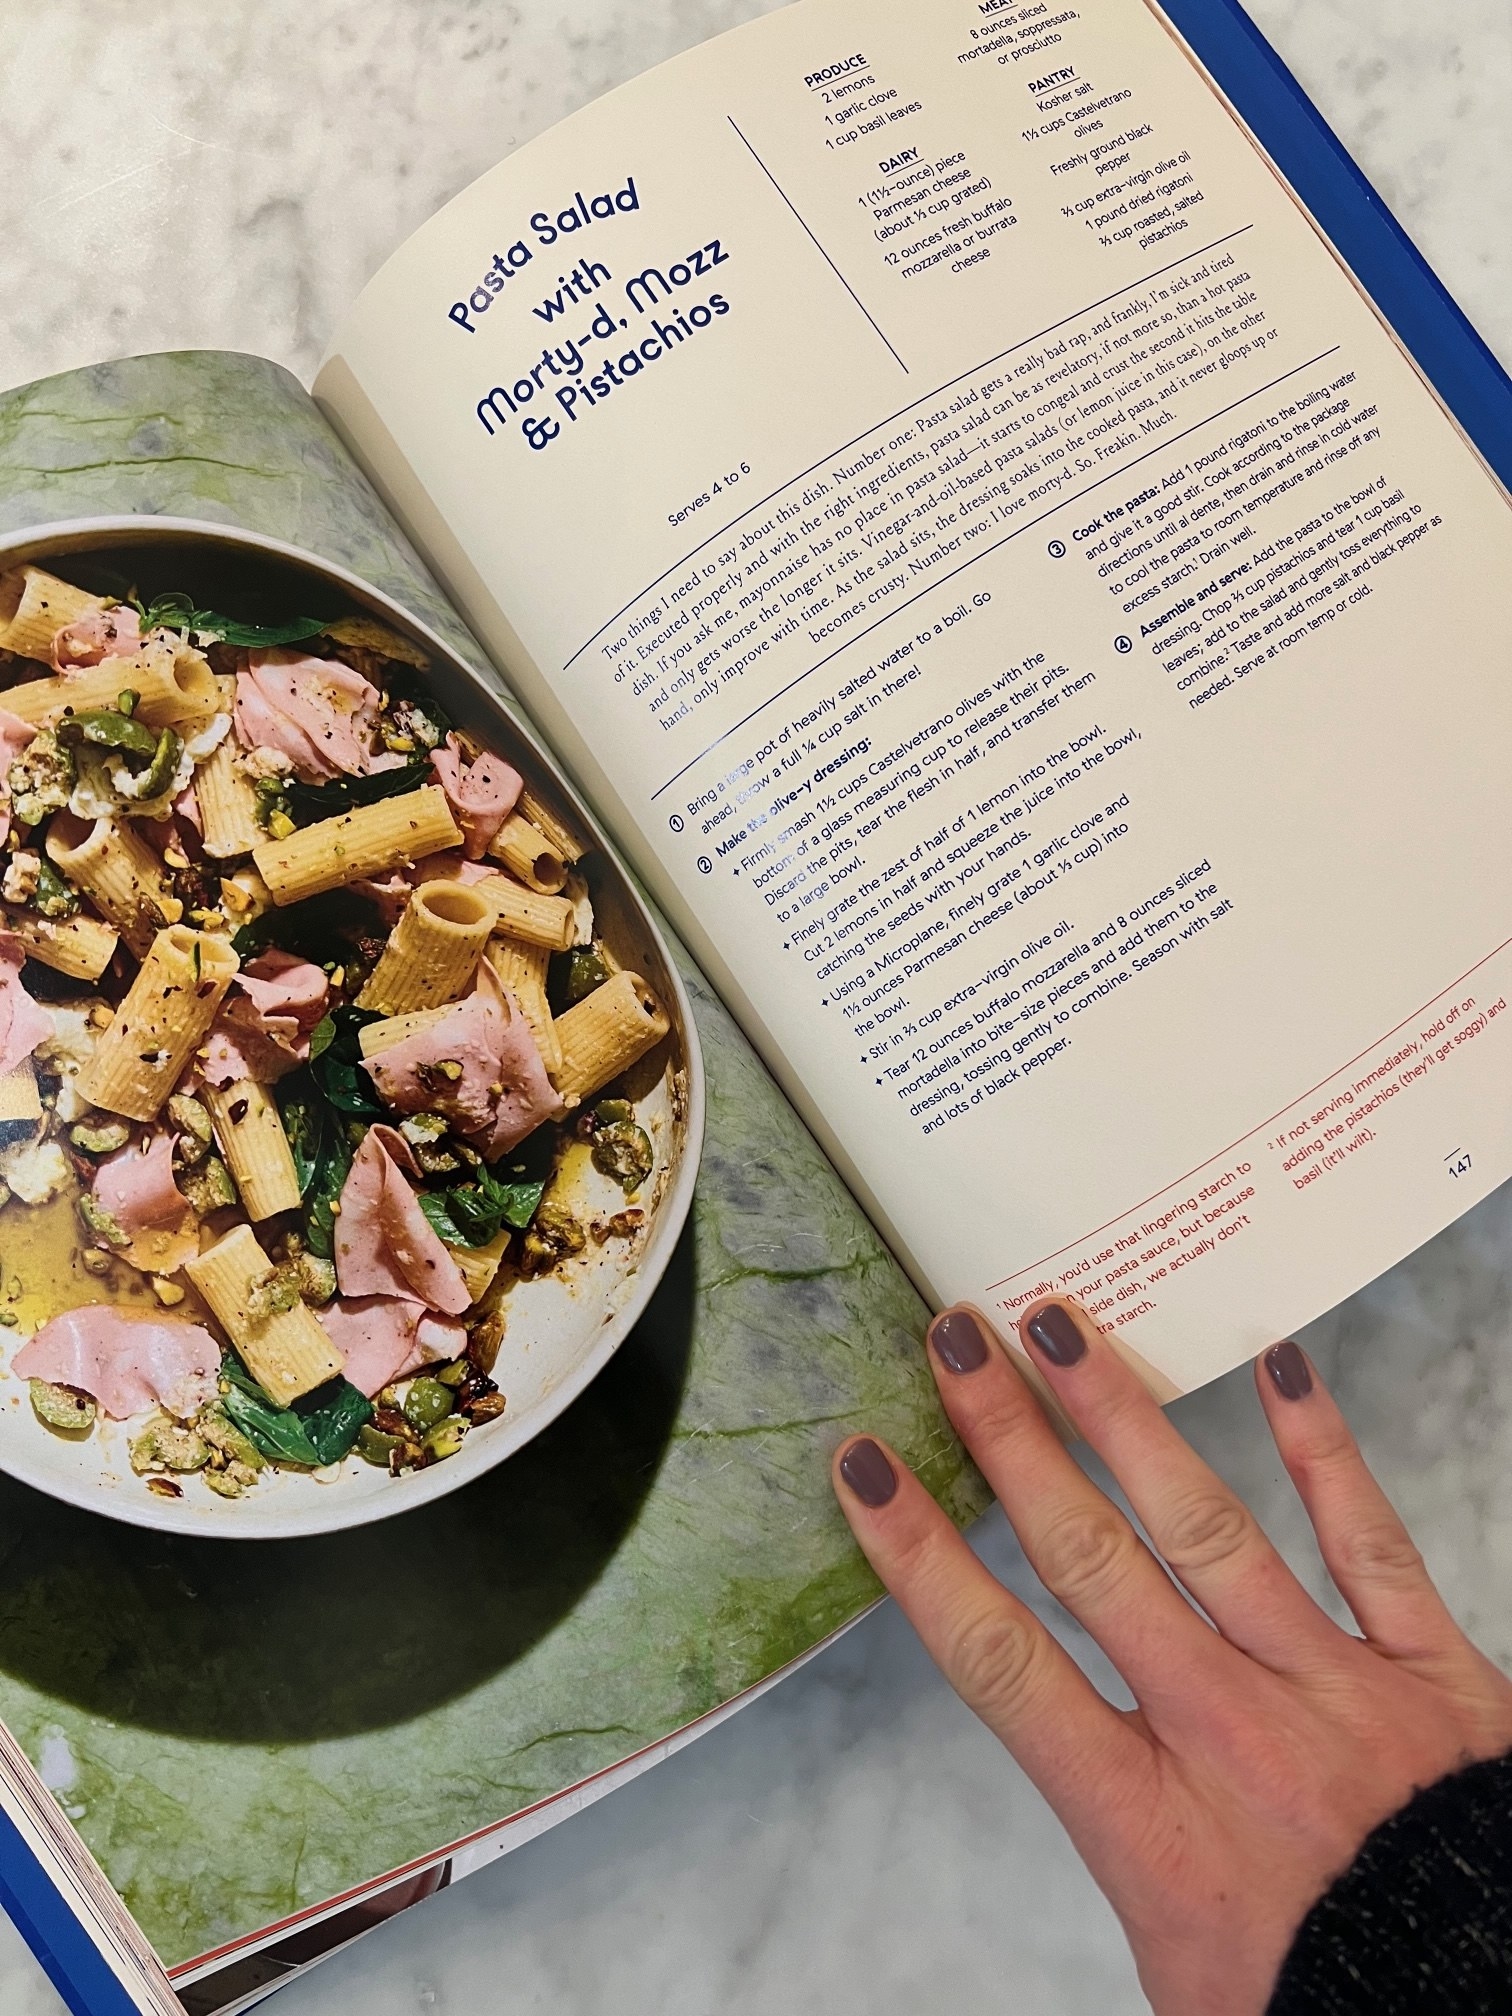 A recipe in a cookbook